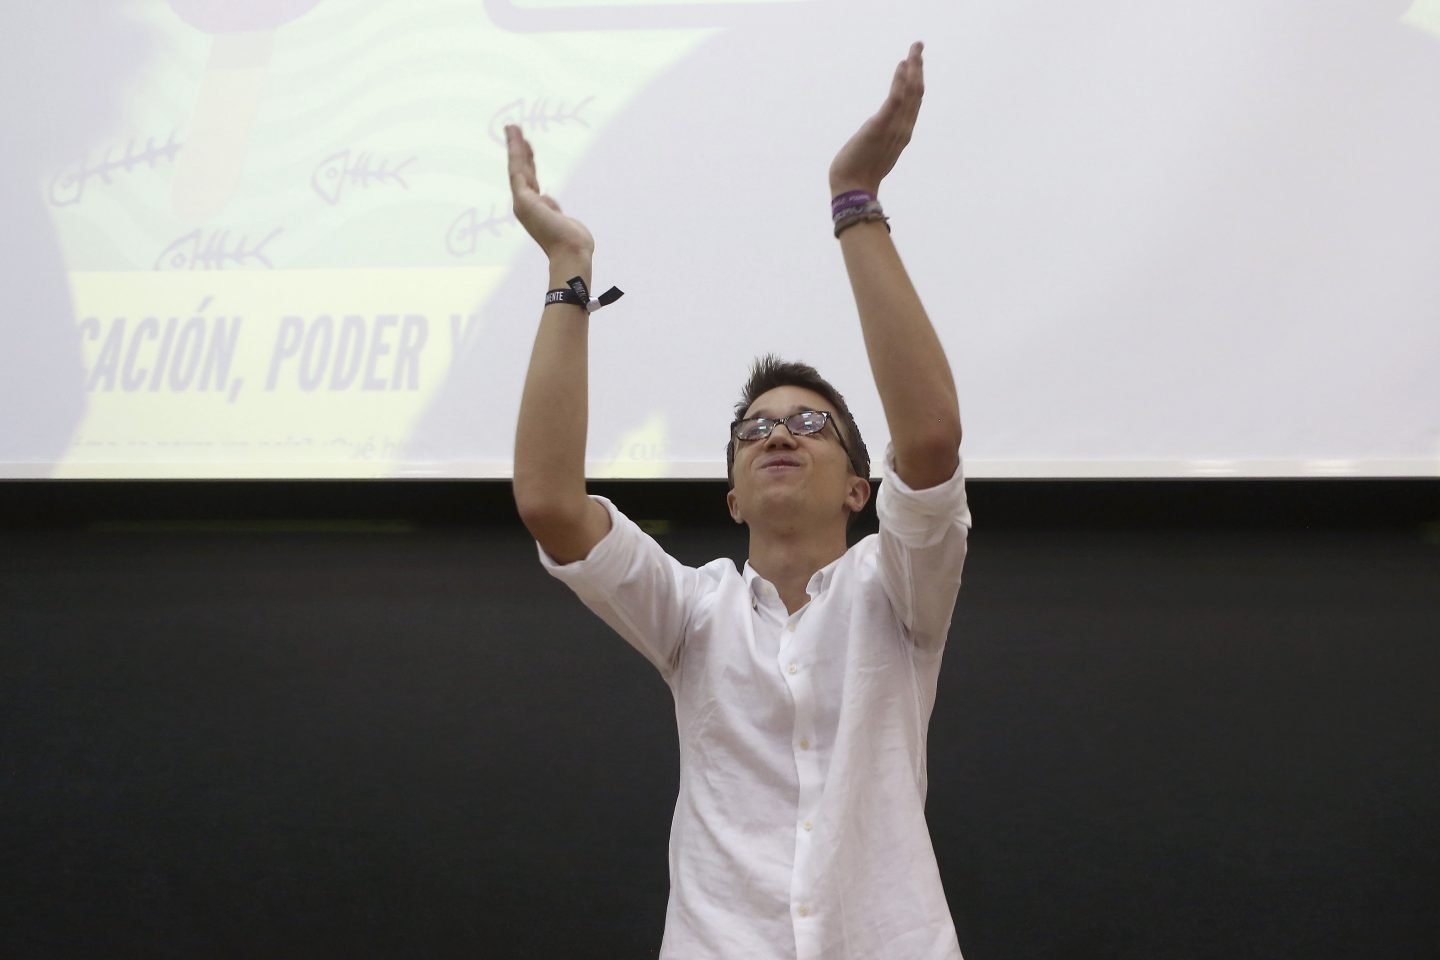 El diputado de Podemos, Íñigo Errejón, durante su participación en la Universidad de Verano, en la que ha defendido mantener con el PSOE una relación de "competencia virtuosa".